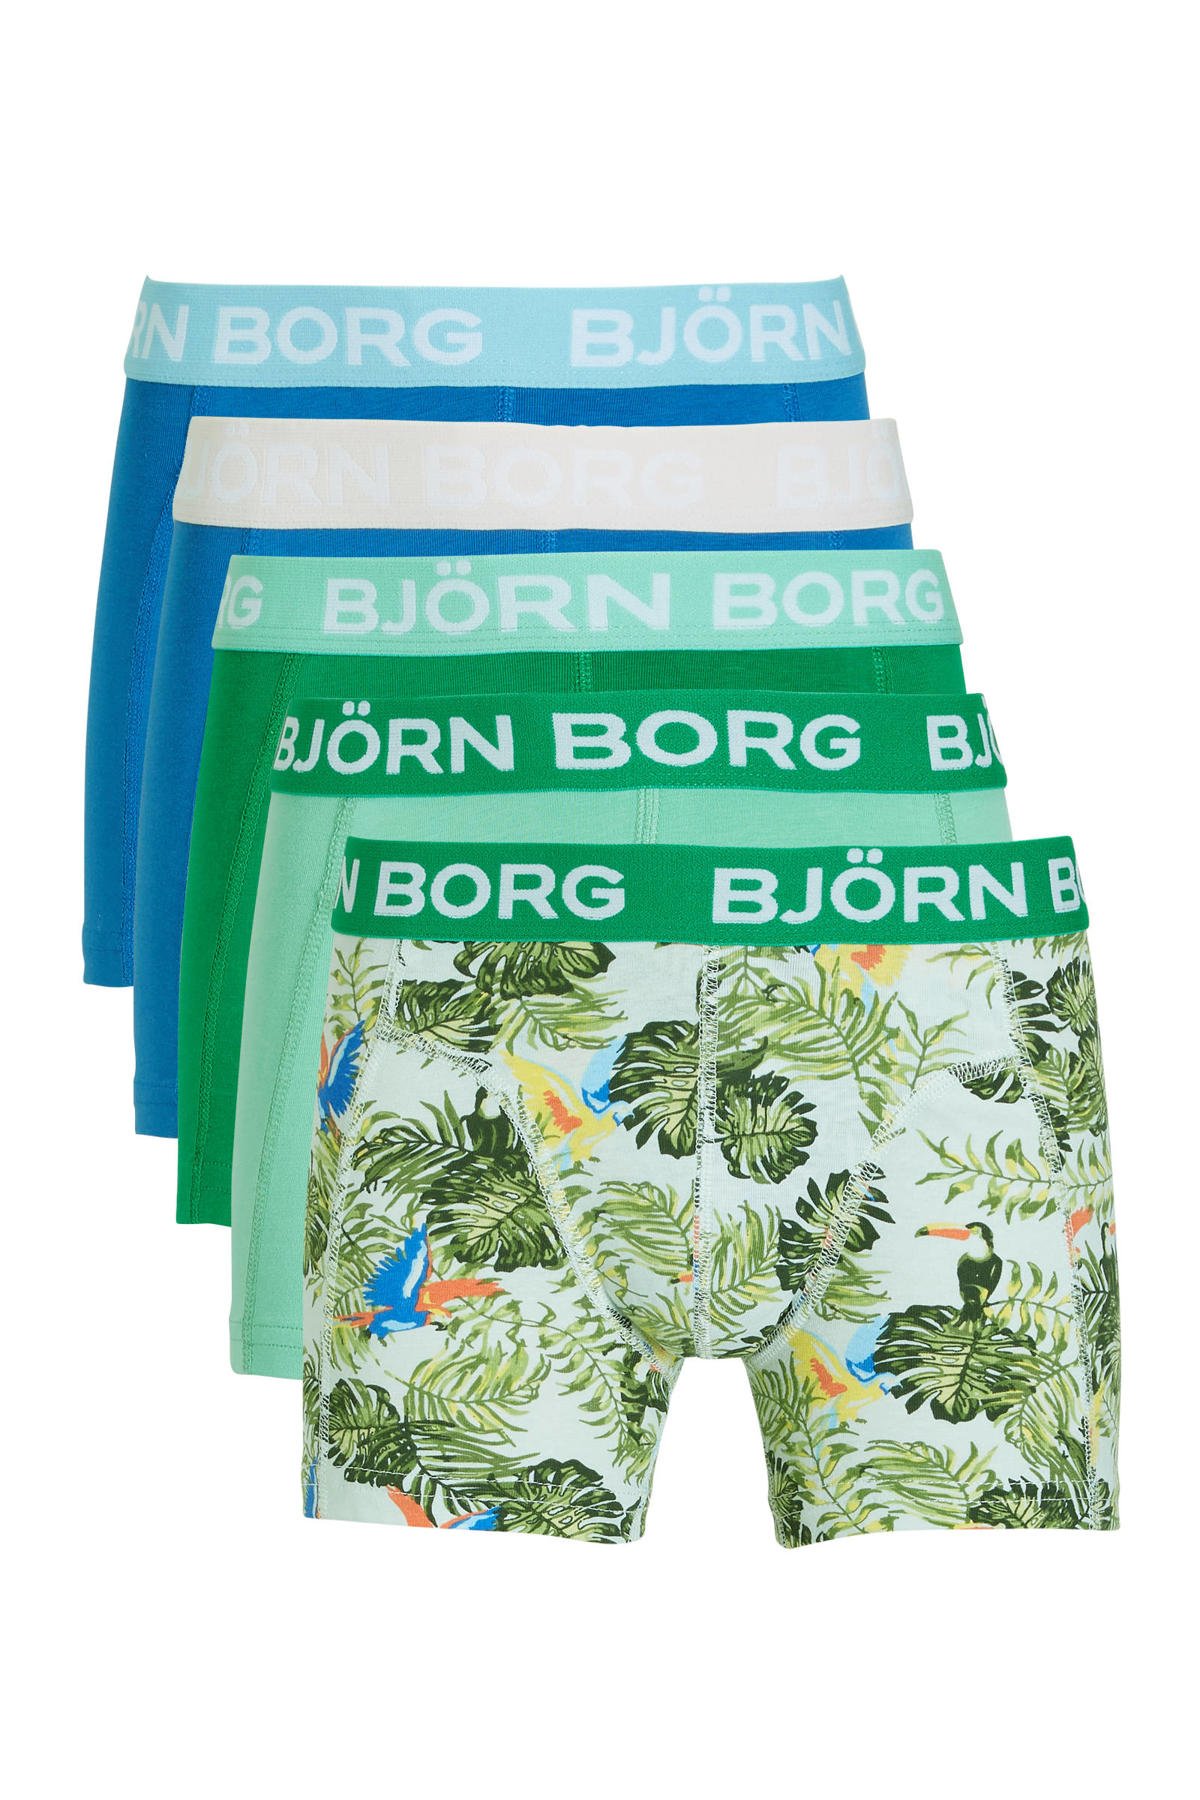 Uitwerpselen Startpunt Versterker Björn Borg boxershort Core - set van 5 groen/blauw | wehkamp